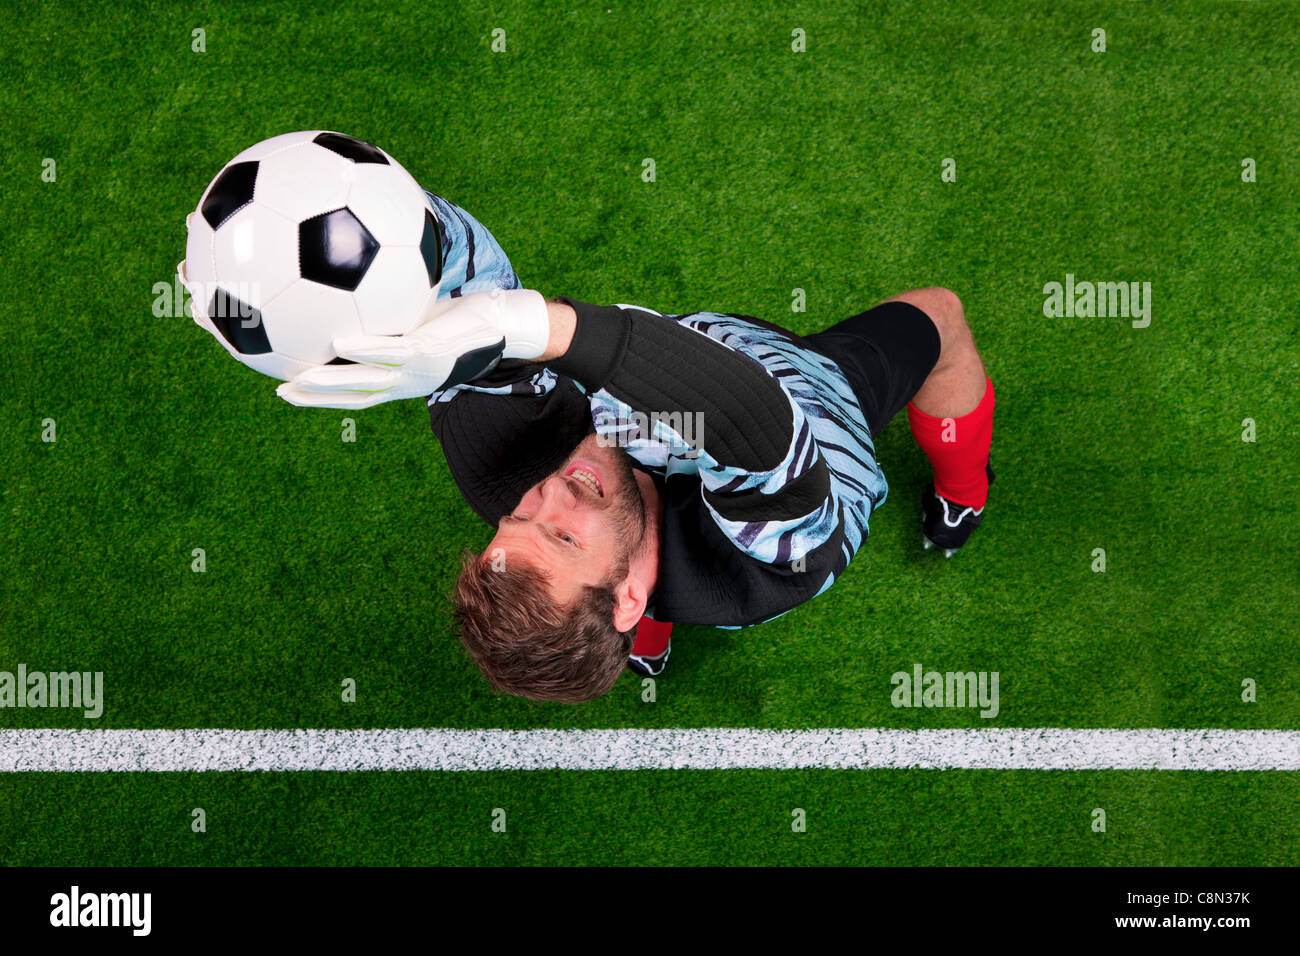 Obenliegende Foto von einem Fußball-Torwart springen in der Luft den Ball auf der Linie retten. Schwerpunkt ist auf seinem Gesicht. Stockfoto